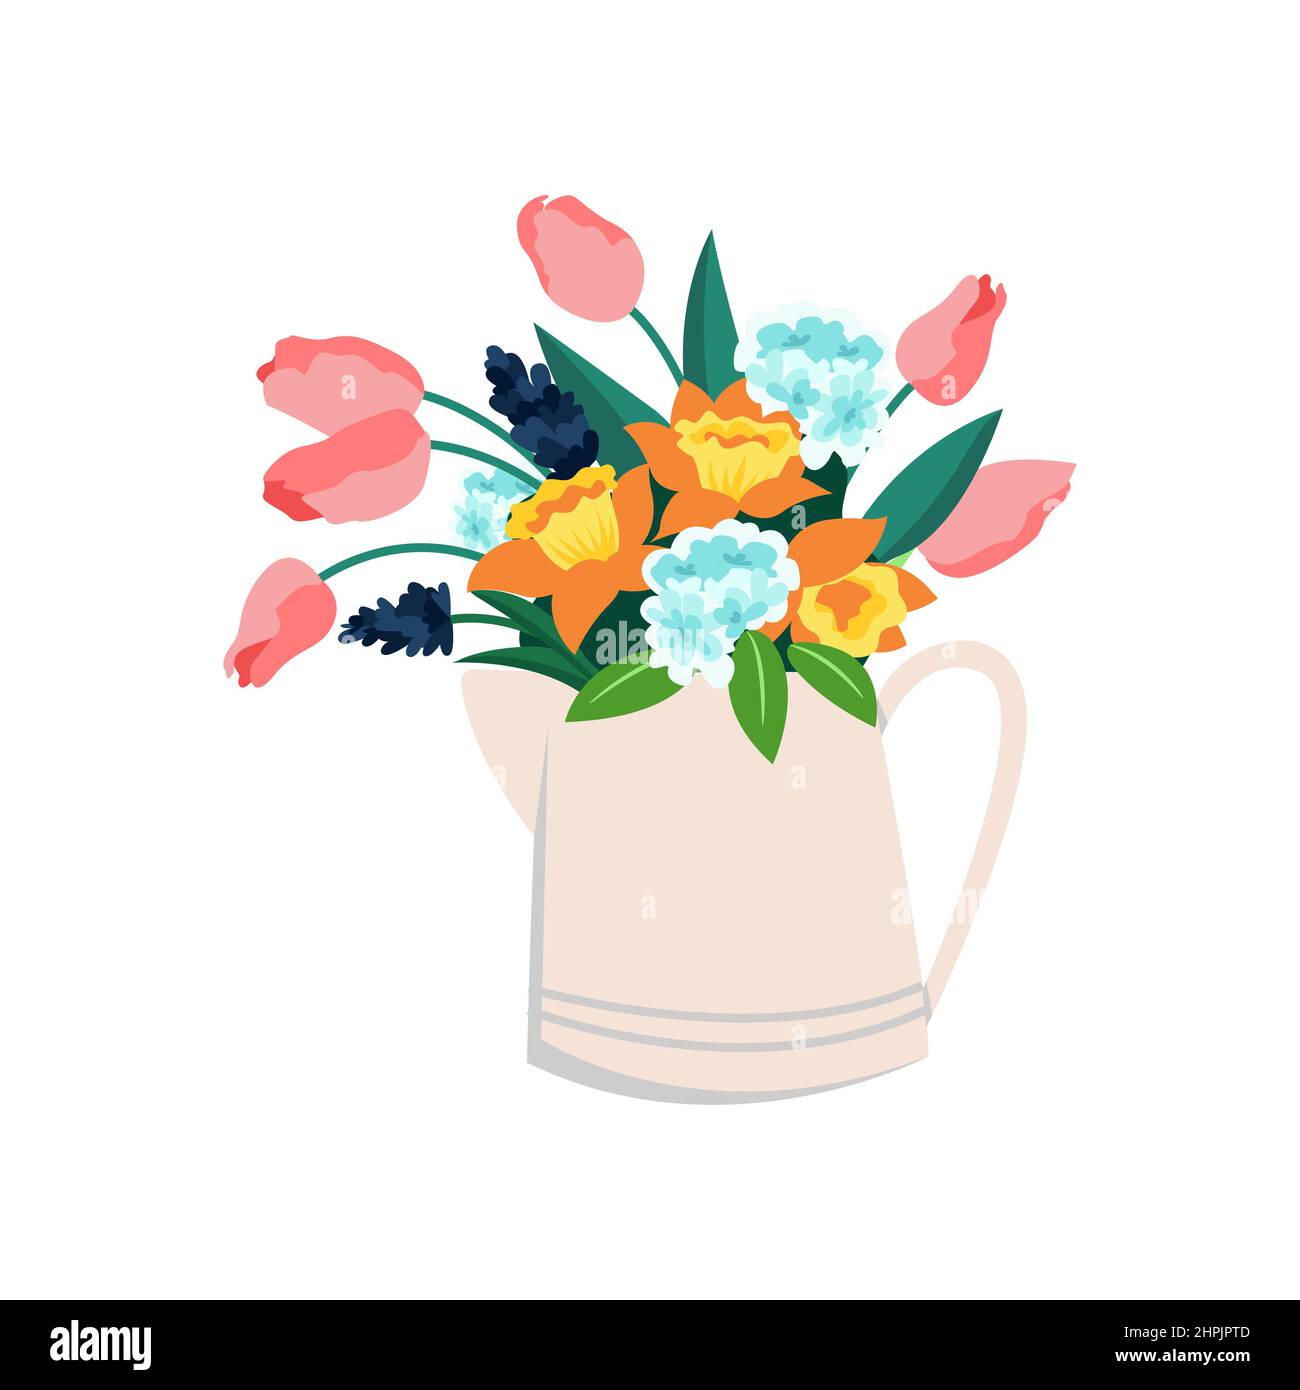 Krug mit Blumen, Tulpen und Narzissen, Frühlingsstrauß mit Hortensien. Vektorgrafik Stock Vektor